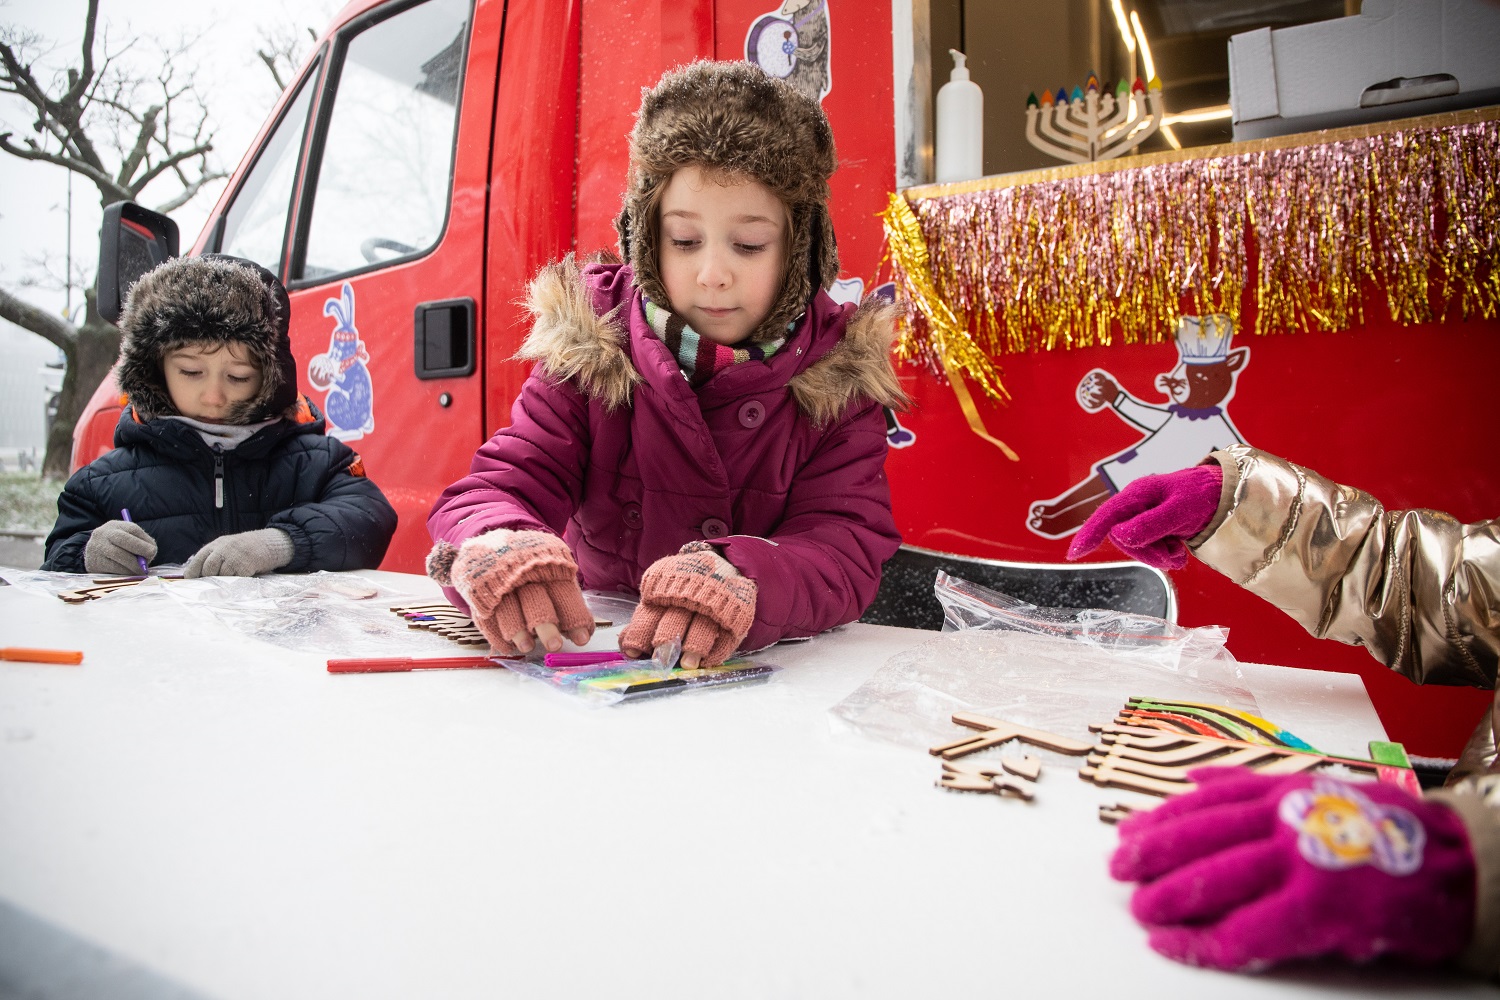 Dzieci podczas warsztatów w trakcie Rodzinnej Chanuki 2021 ozdabiają modele chanukij (świec chanukowych). W tle czerwony chanukobus.